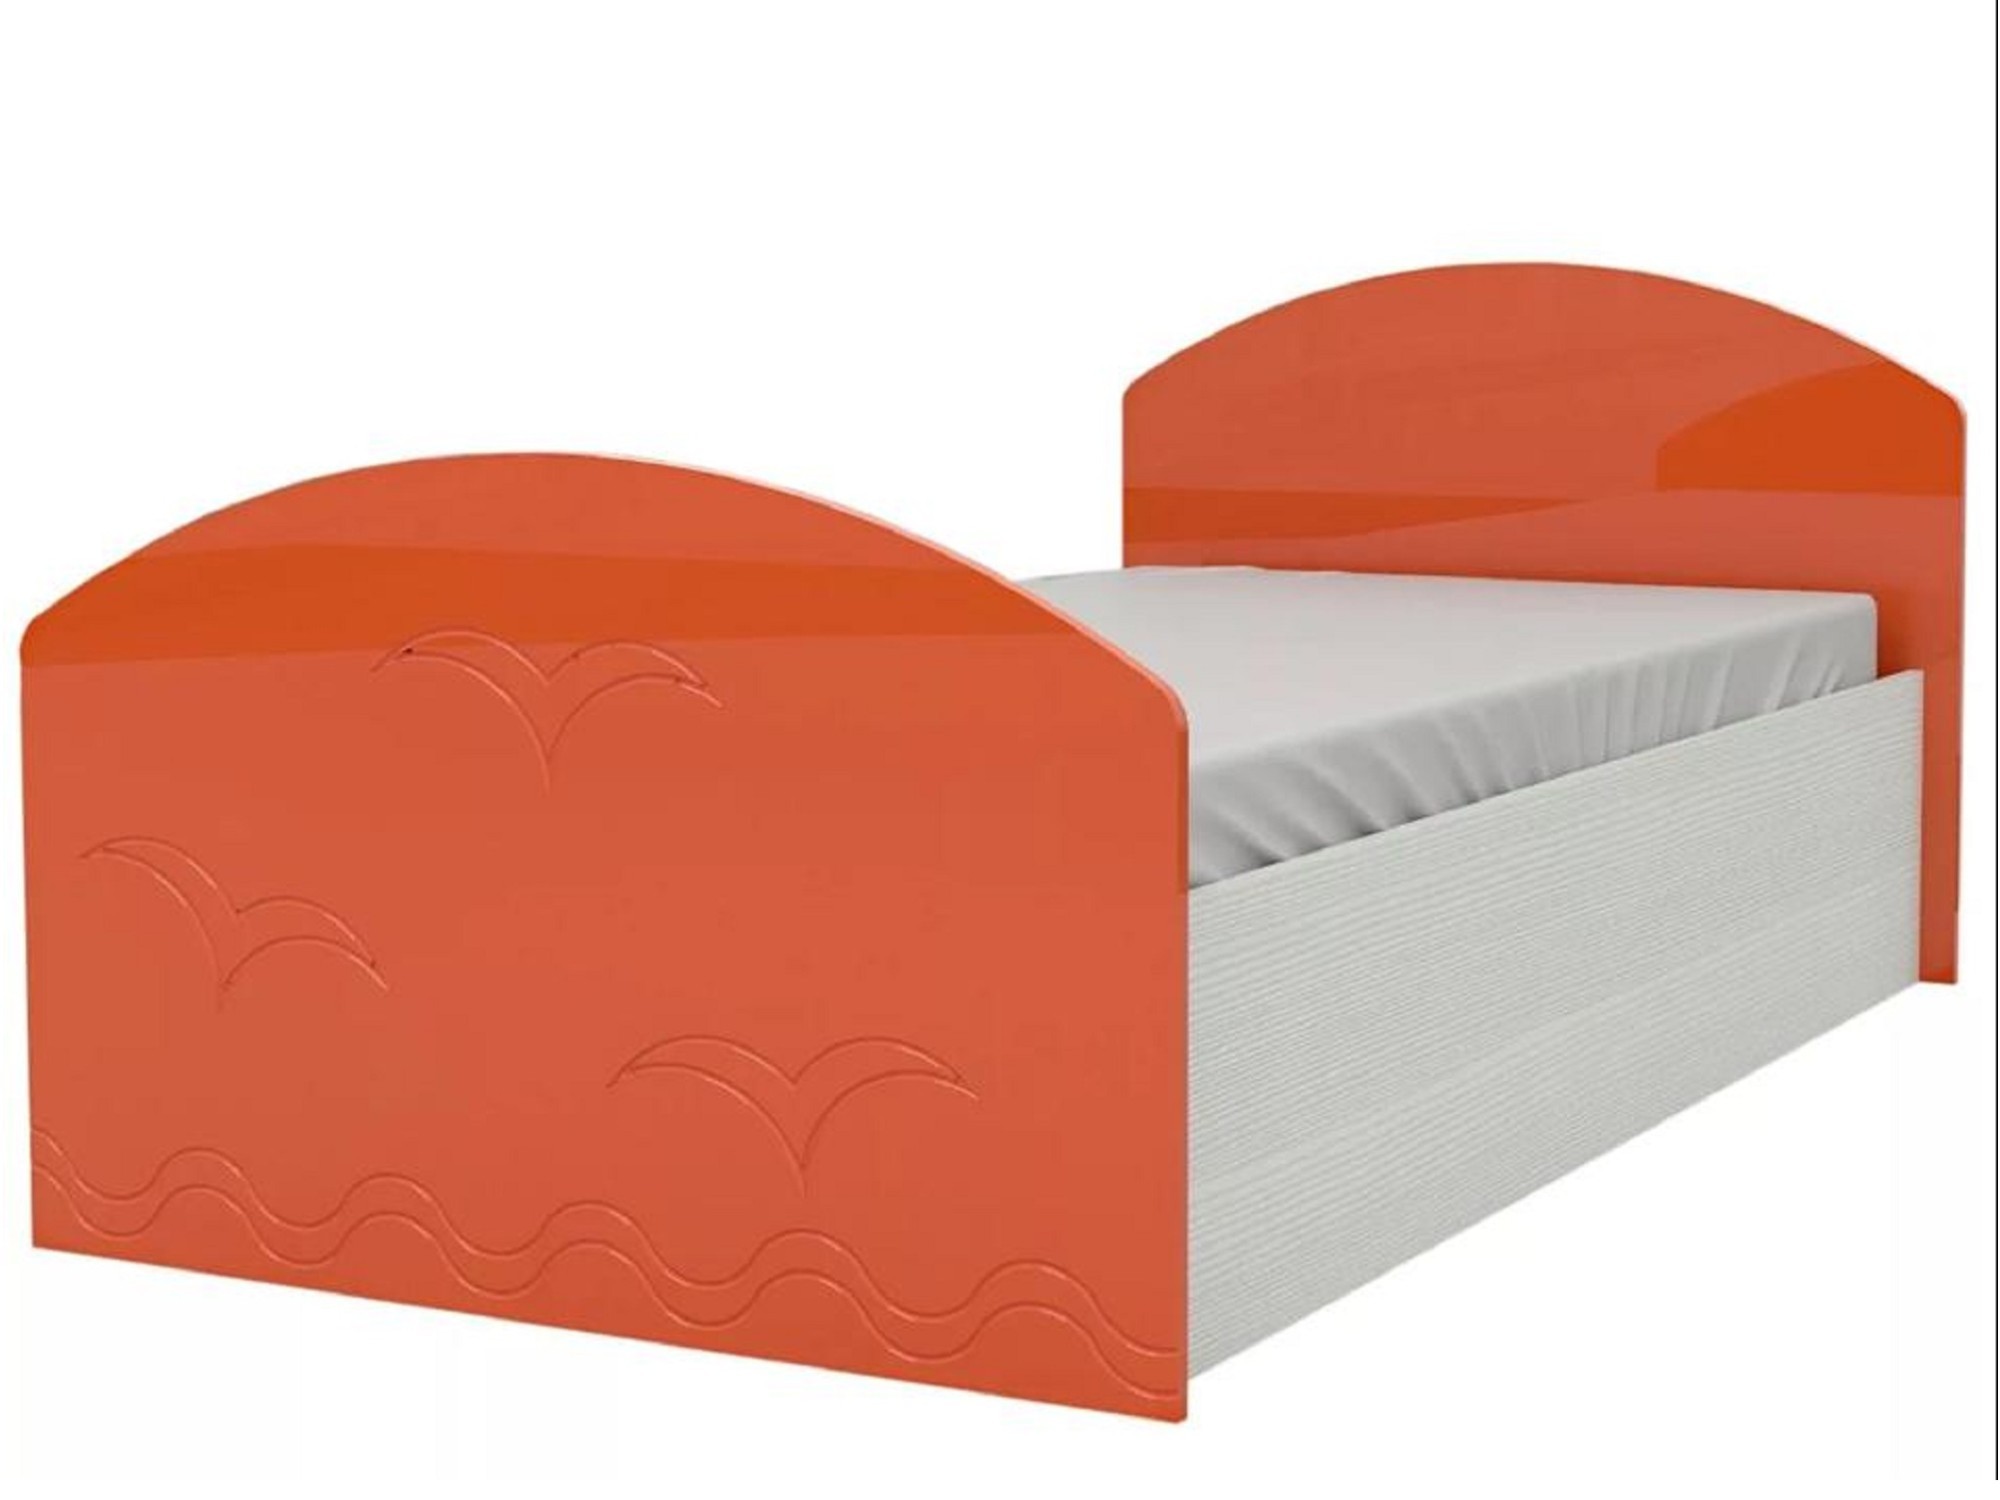 Юниор-2 Детская кровать 80, металлик (Оранжевый металлик, Дуб белёный) Оранжевый металлик, МДФ, ЛДСП юниор 2 детская кровать 80 металлик фиолетовый металлик дуб белёный дуб белёный мдф лдсп